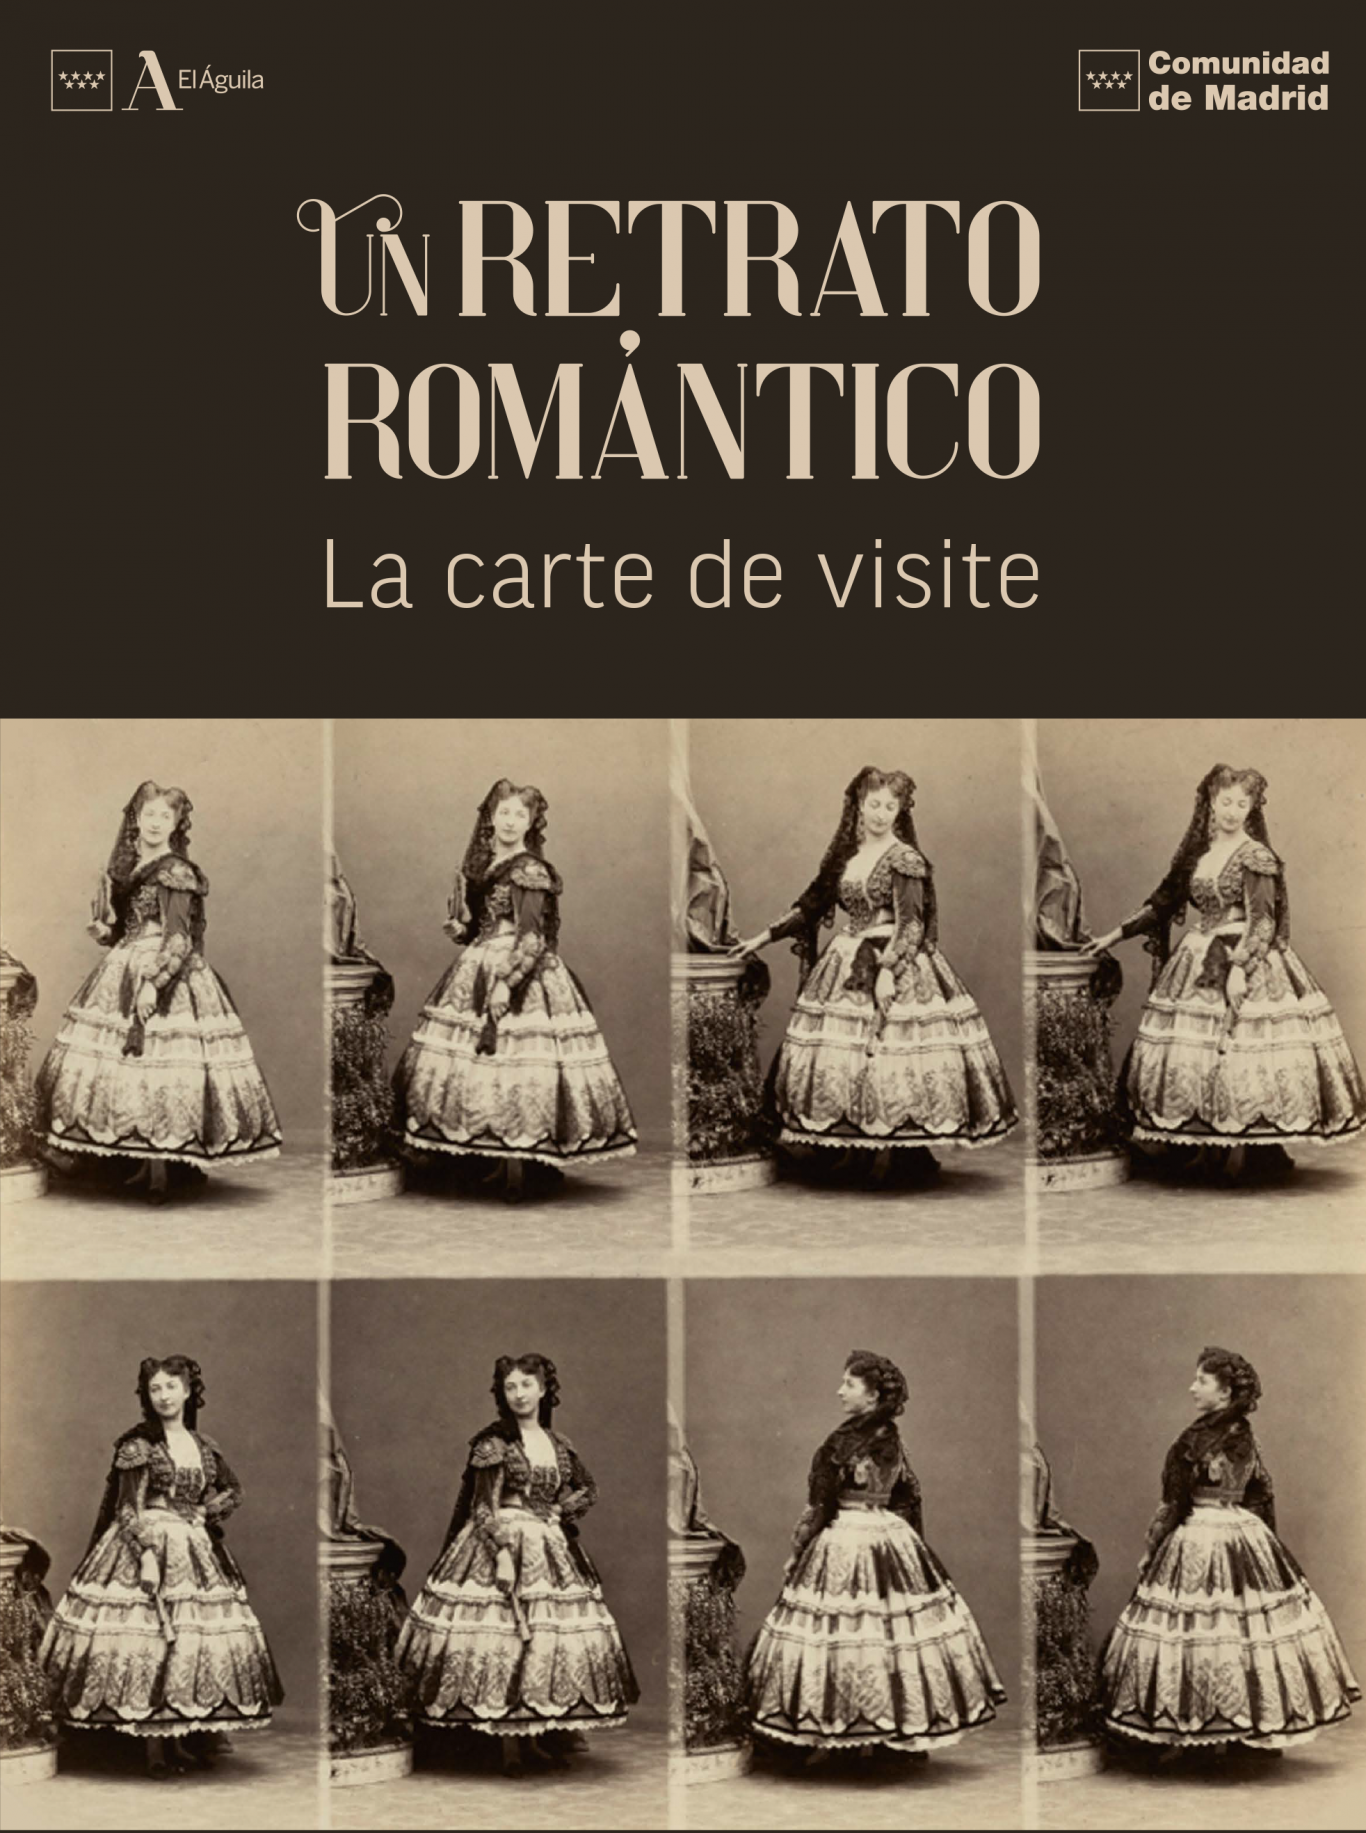 Pioneros de la fotografía en Madrid: los primeros gabinetes. Biblioteca Regional de Madrid